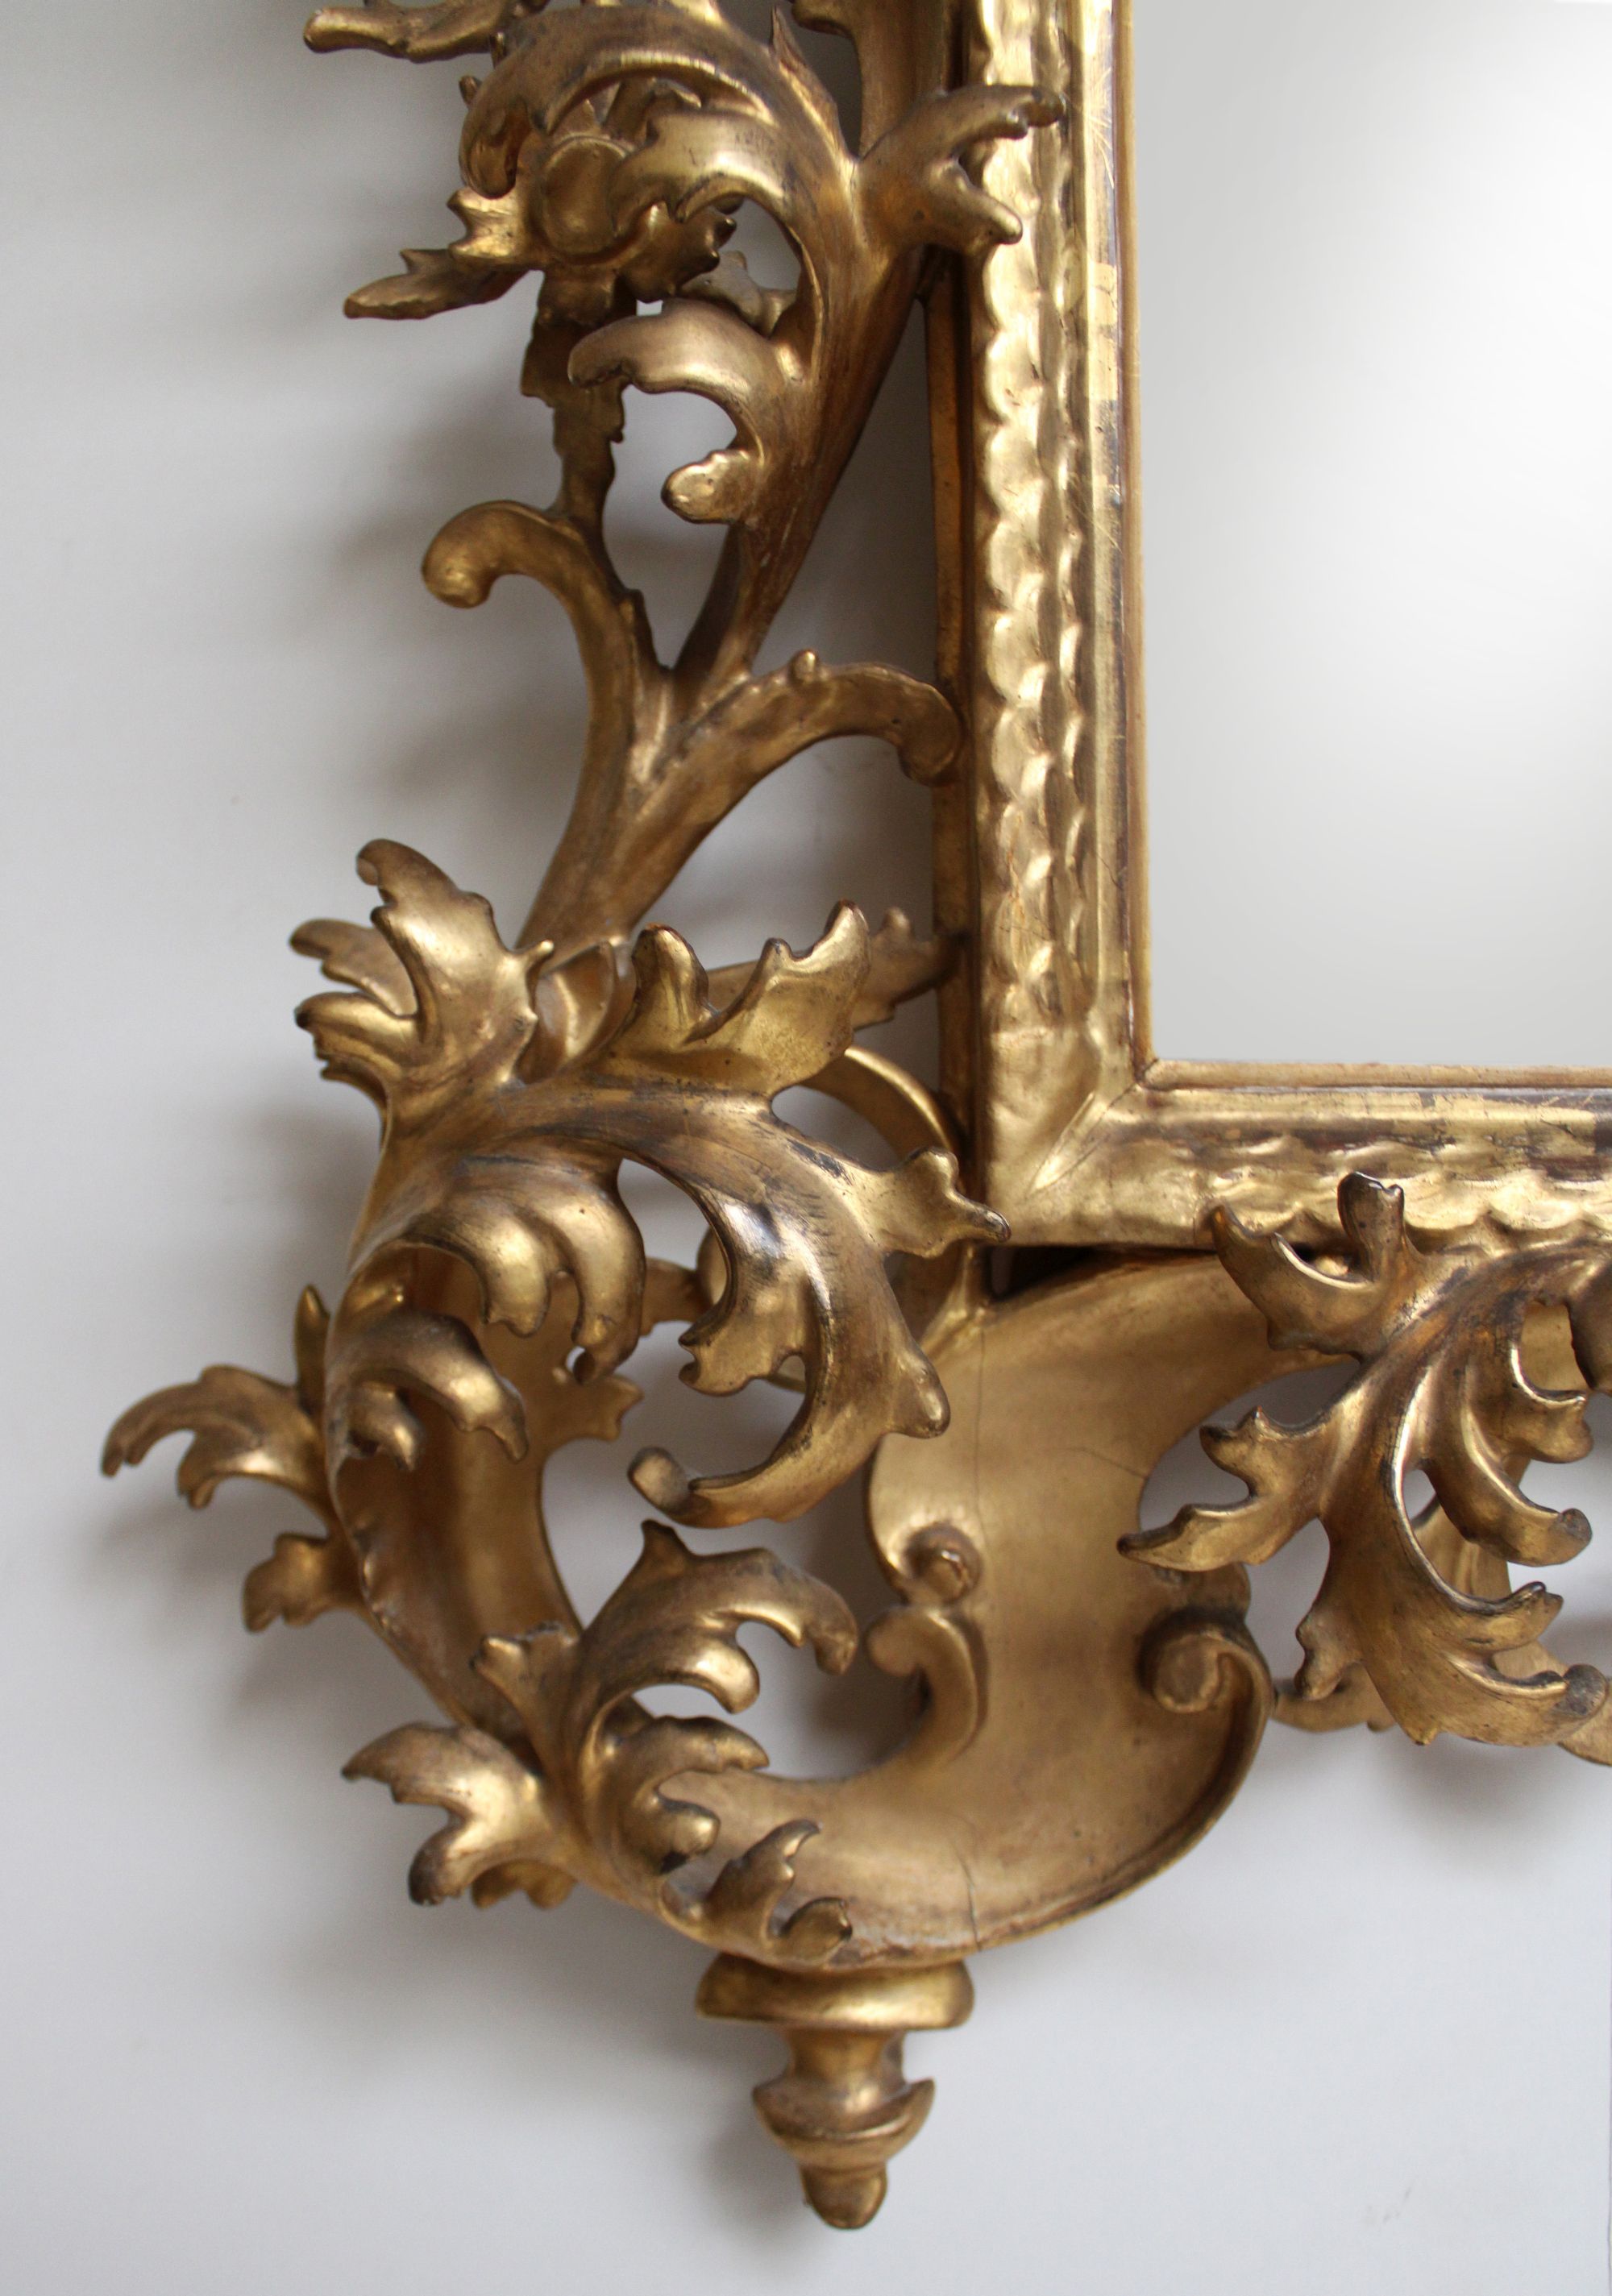 Spiegel, Louis XV, Frankreich, Mitte 18. Jh., originale Fassung und Vergoldung, Spiegelglas später, - Bild 2 aus 2